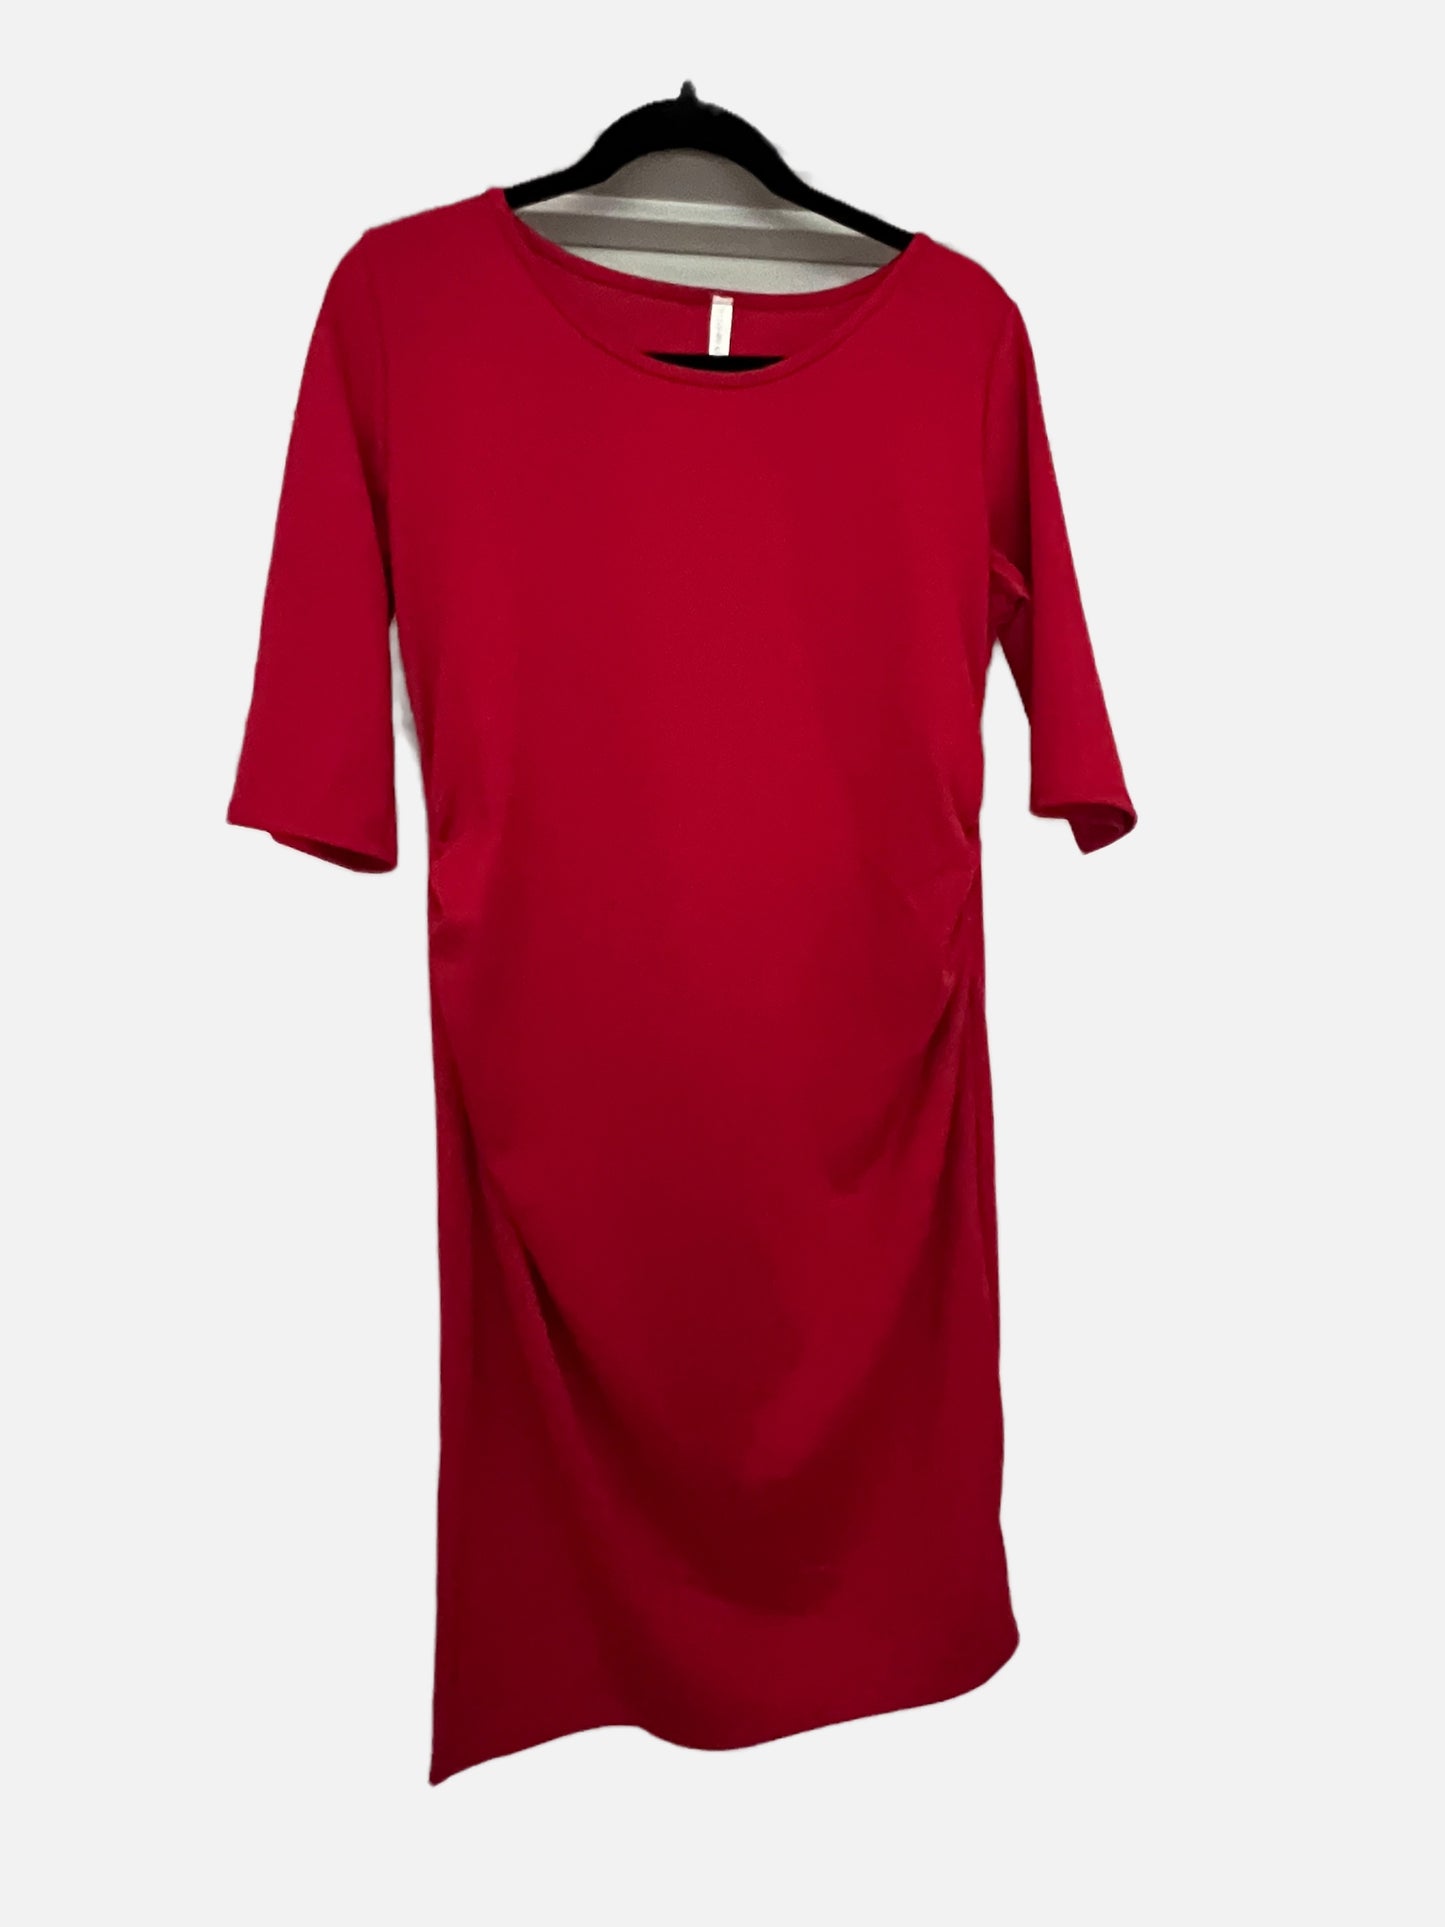 PinkBlush red maternity dress, size large, VGUC